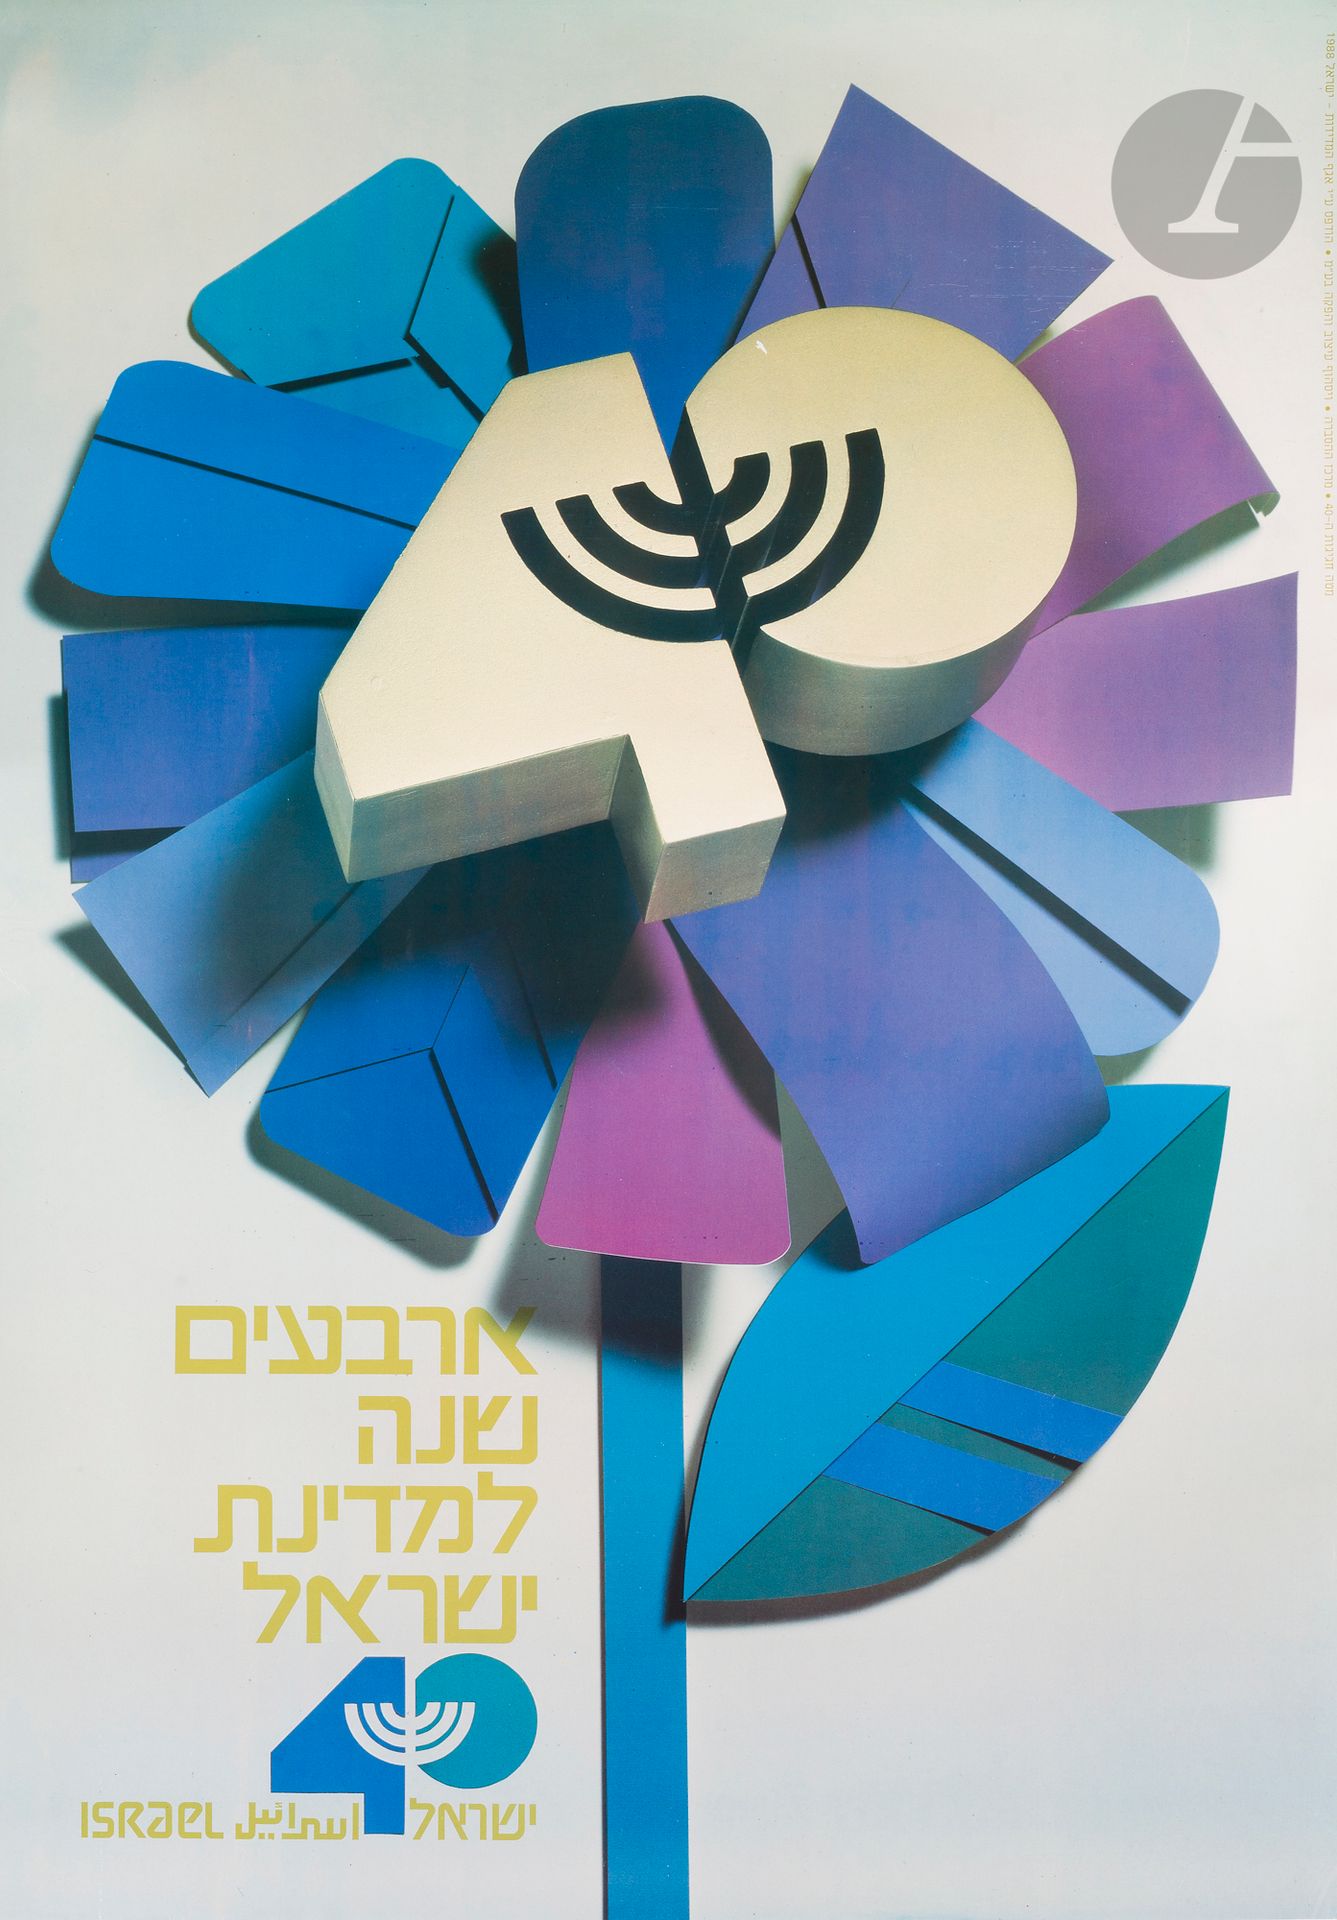 Null [ISRAËL]
Affiche pour les 40 ans de l’État d’Israël.
Affiche entoilée.
98 x&hellip;